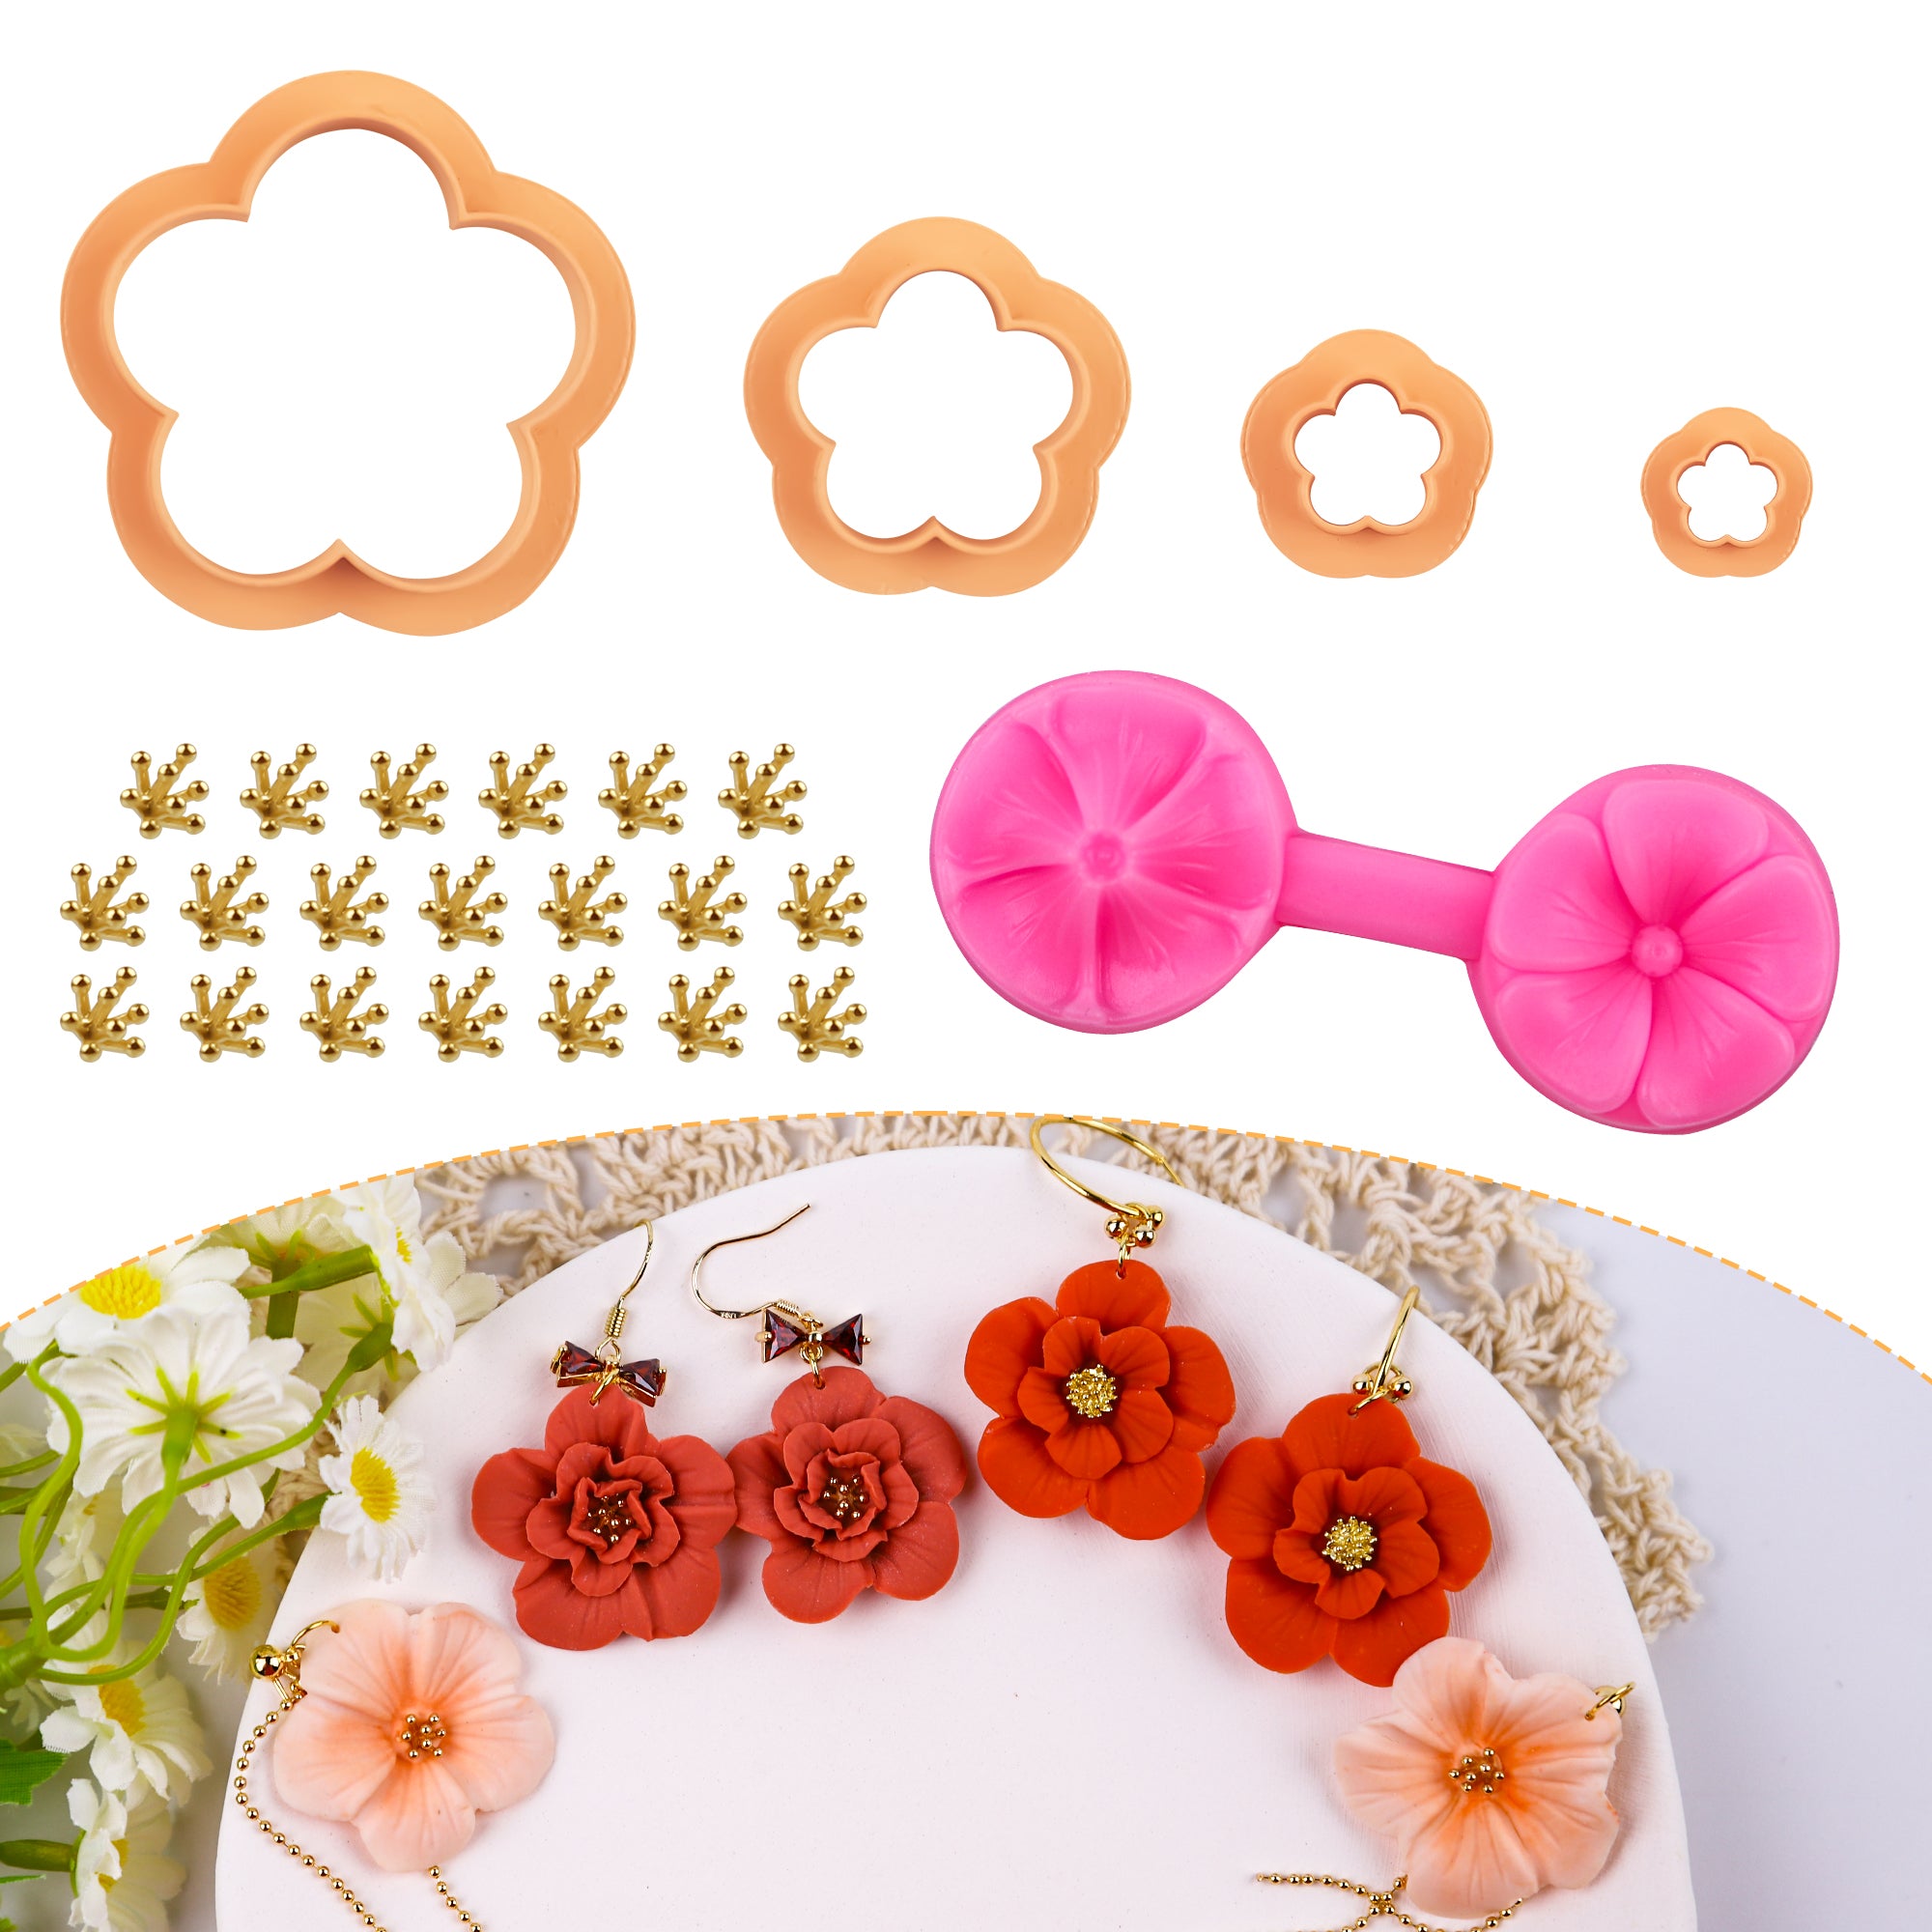 Puocaon Flower Petal Clay Cutters 4 Pcs, 2 Pcs Flower Texture Molds, 20 Pcs Brass Charms